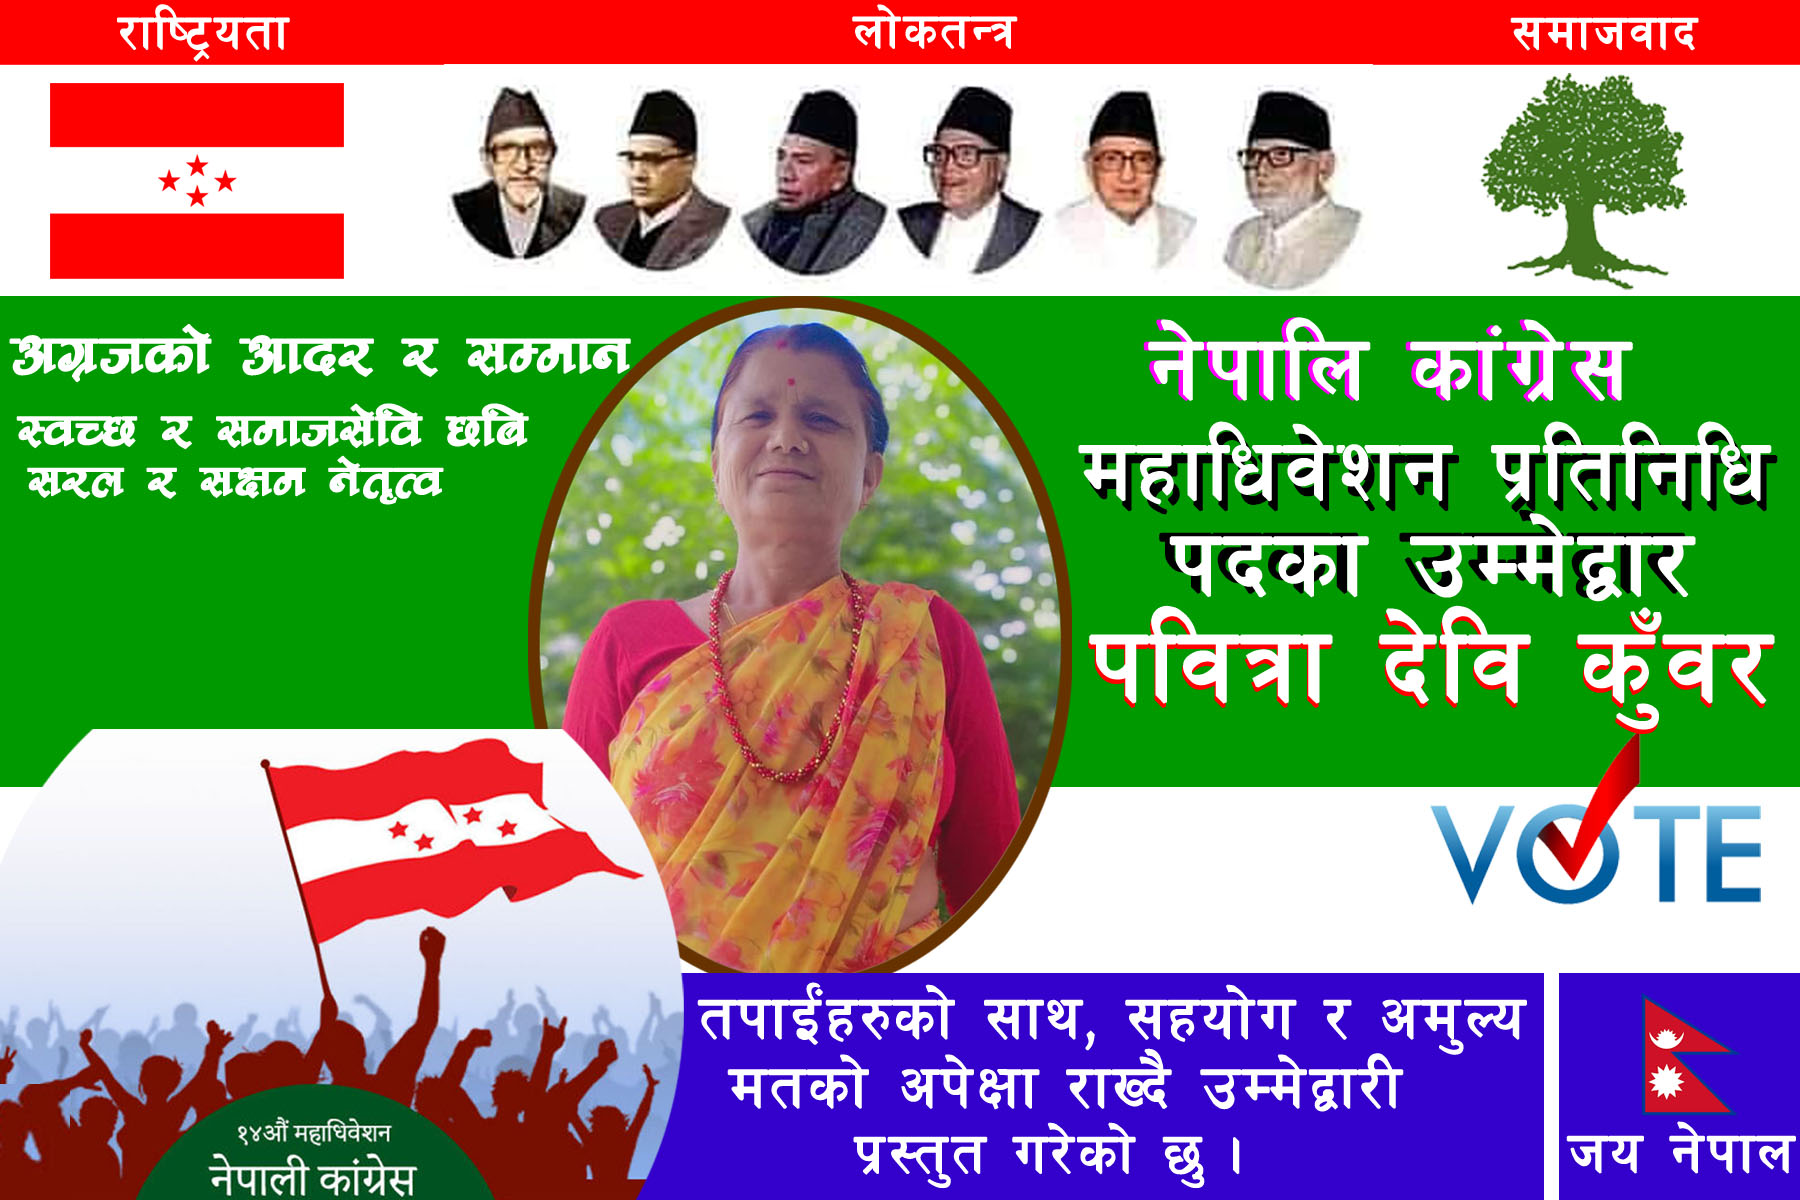 नेत्री पवित्रा कुँवरको नेपाली काँग्रेस केन्द्रिय महाधिवेशन प्रतिनिधिका लागि लागि उम्मेदवारी घोषणा